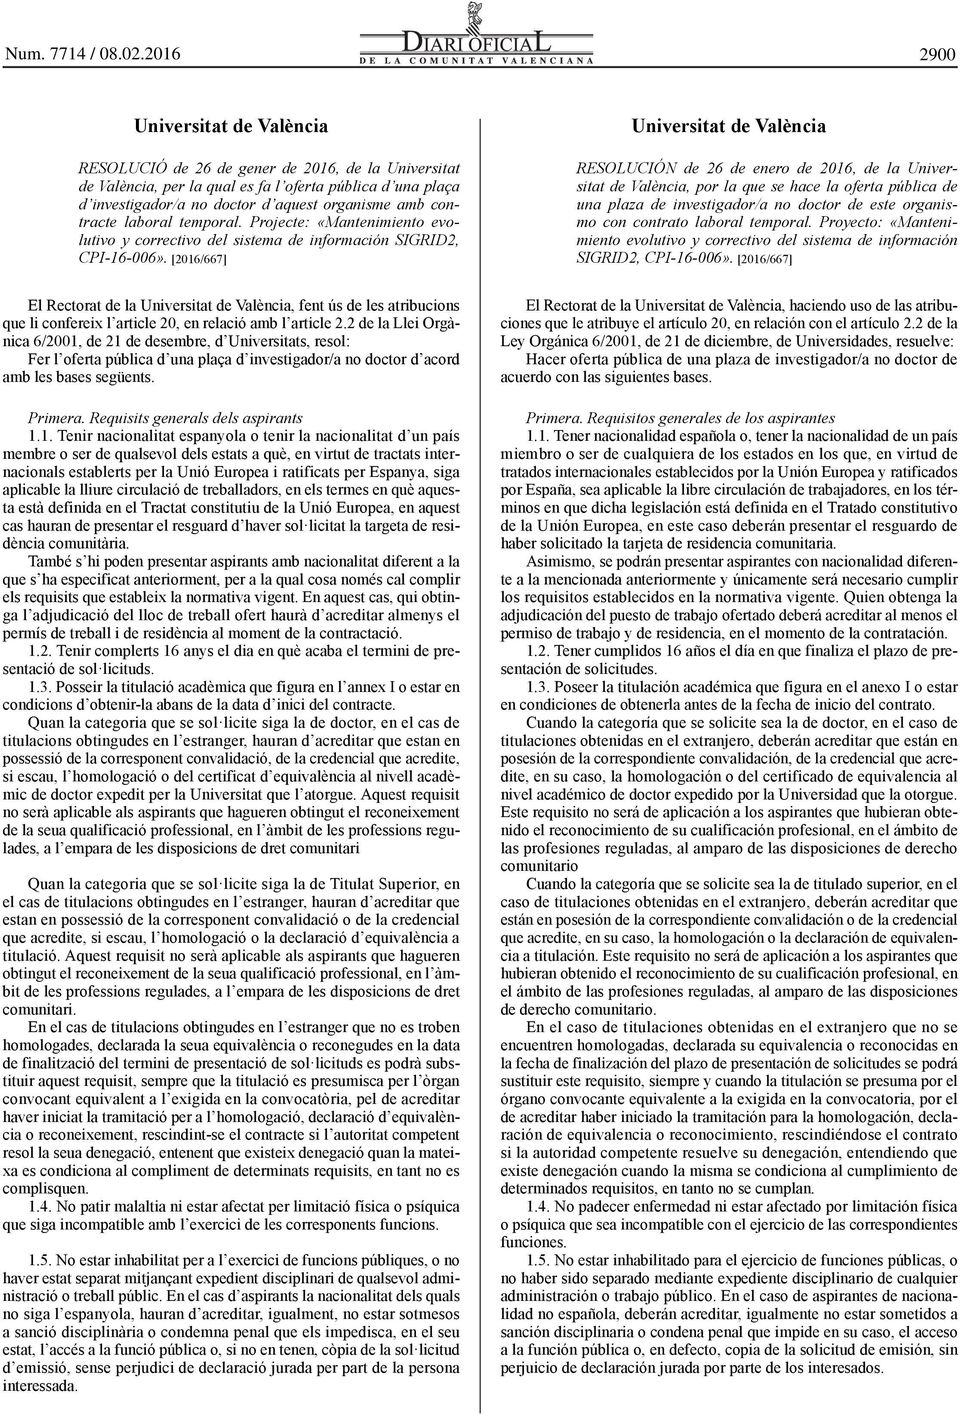 [2016/667] El Rectorat de la Universitat de València, fent ús de les atribucions que li confereix l article 20, en relació amb l article 2.